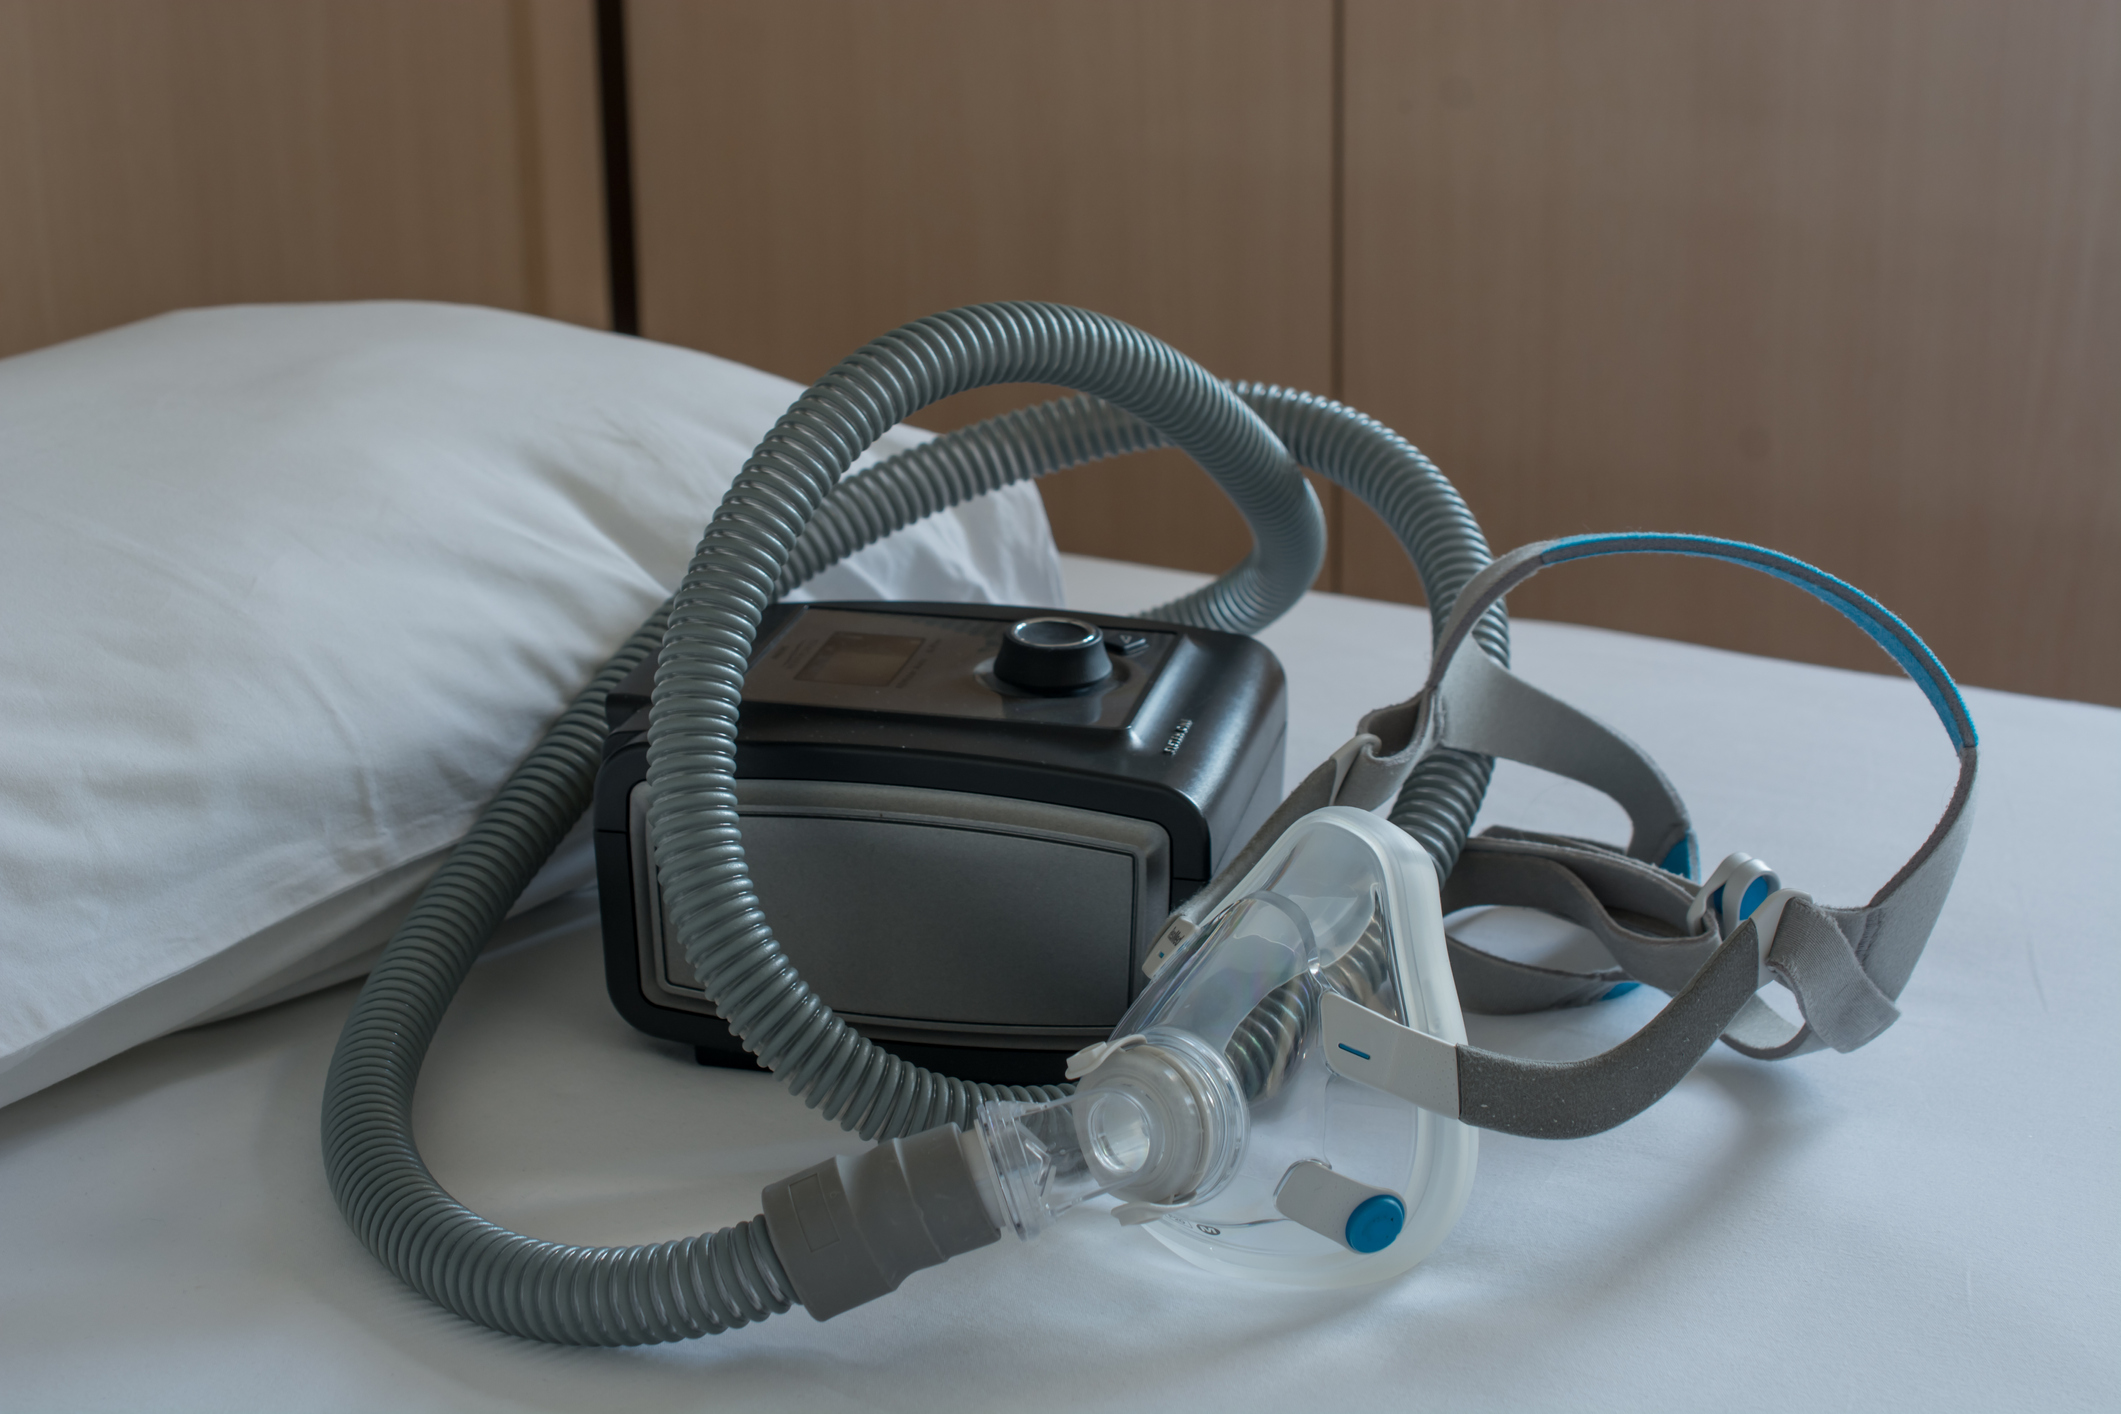 Unused CPAP machine on bed